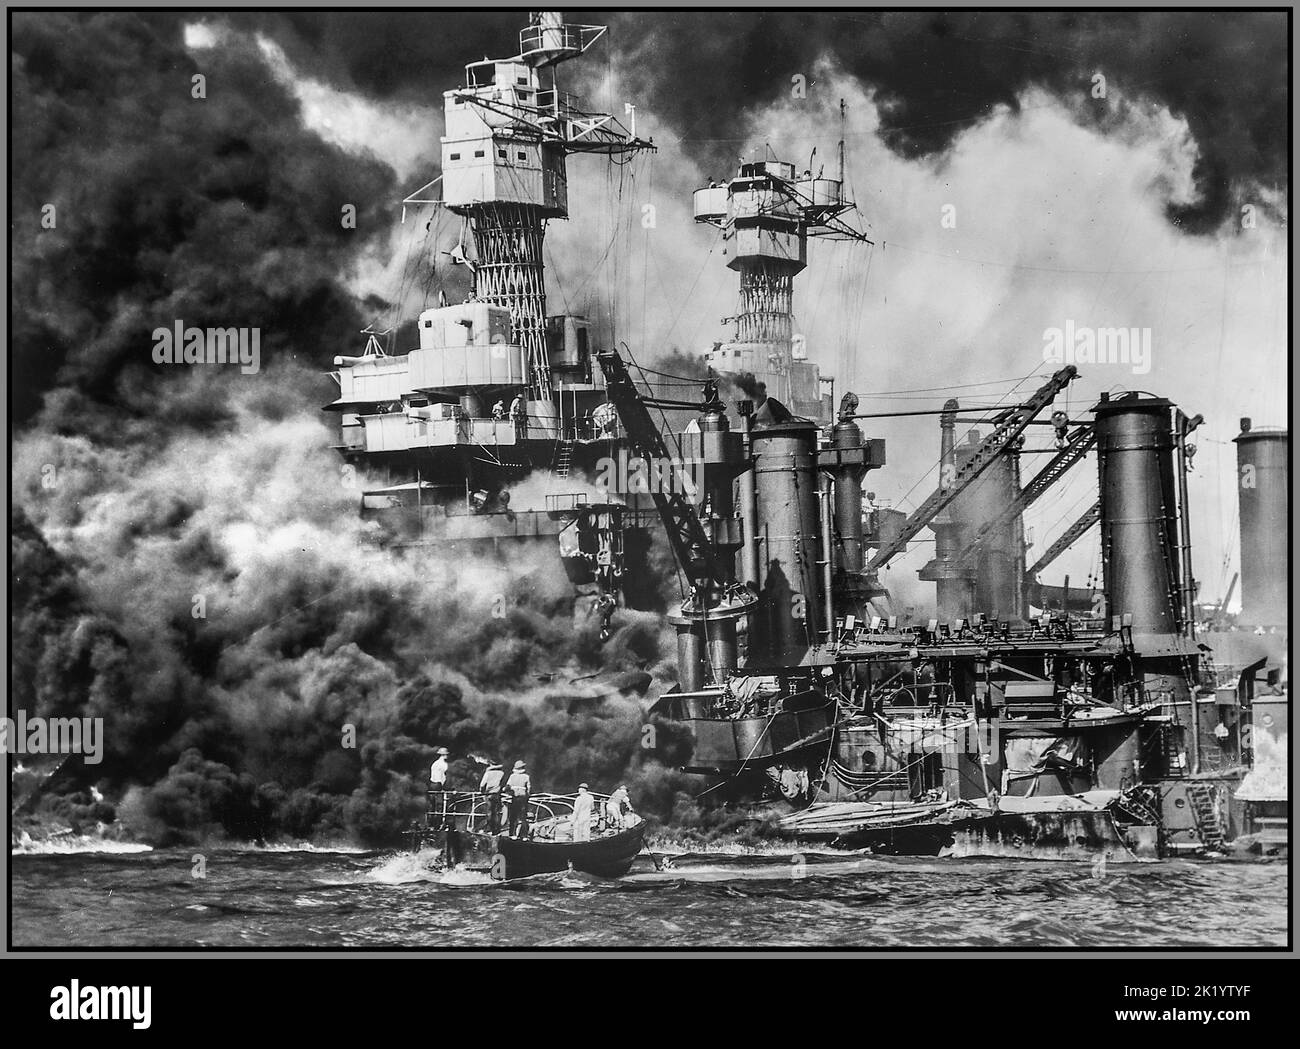 PEARL HARBOR ATTACCO GIAPPONESE WW2 piccola barca che salva un marinaio in acqua dalla USS West Virginia in fiamme a Pearl Harbor Data 7 dicembre 1941 Foto Stock